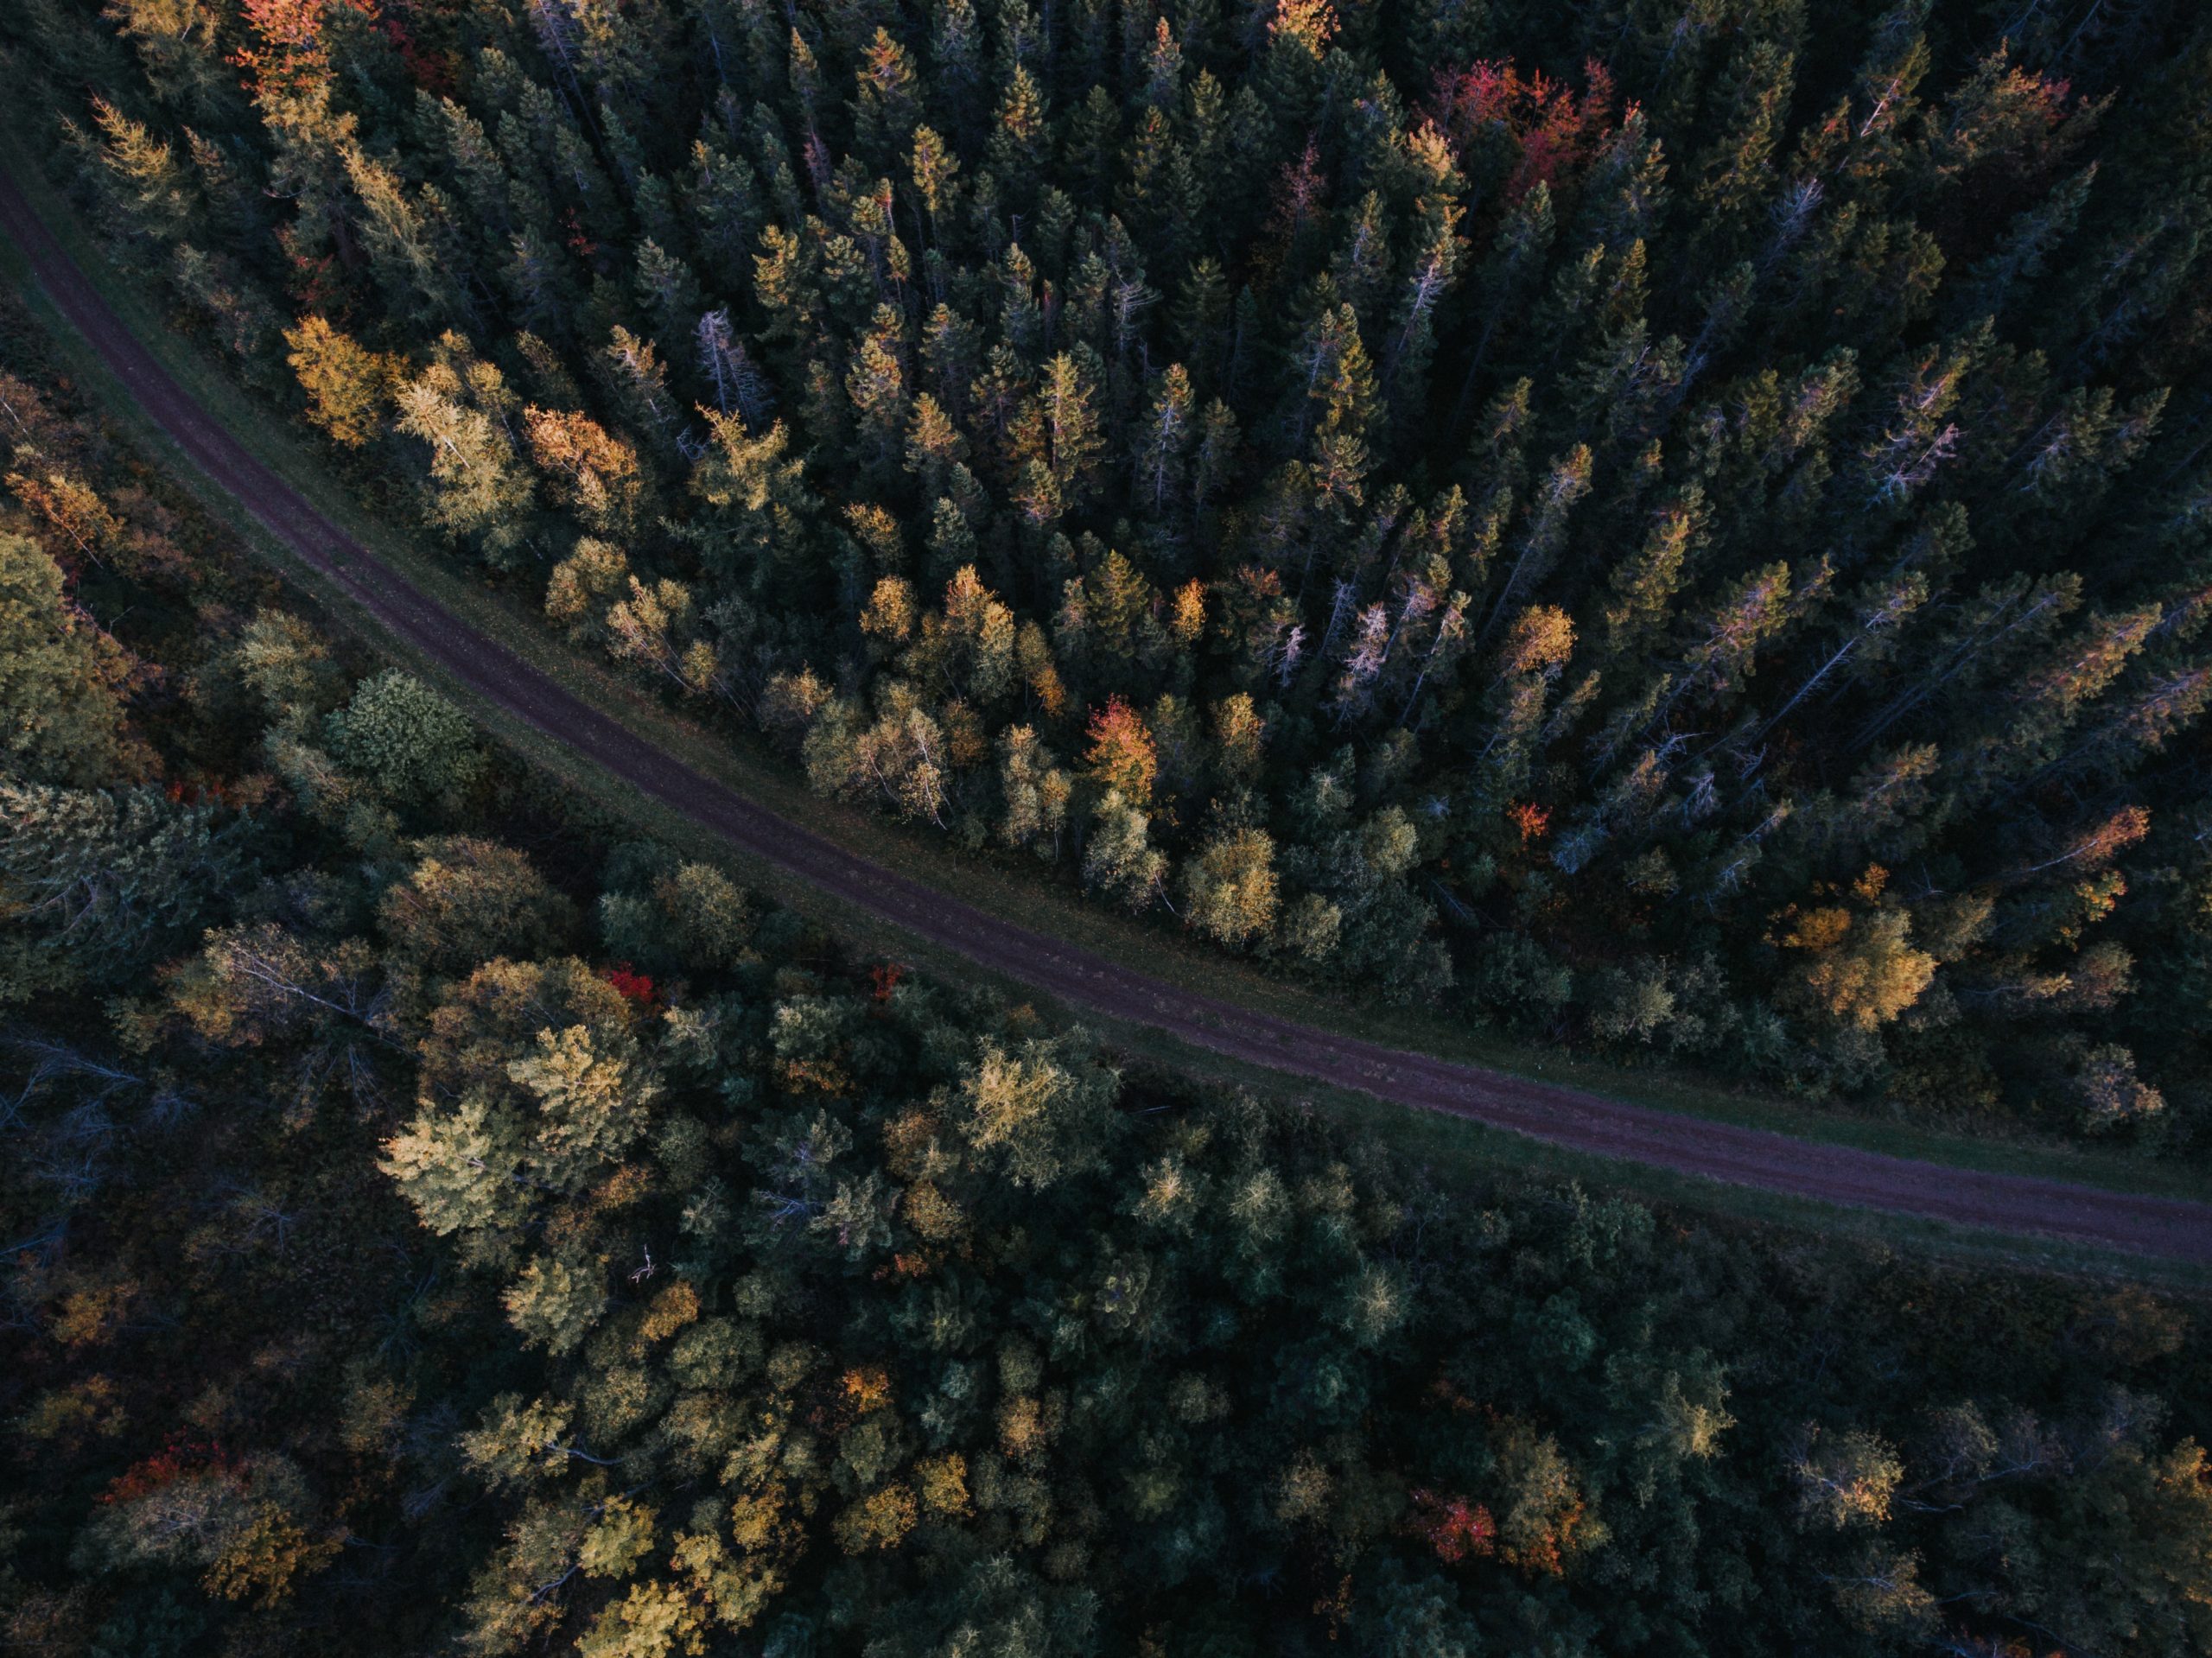 Une vue aérienne d'une route dans une forêt, illustrant les efforts continus visant à réduire de moitié l'empreinte carbone des organisations grâce à l'initiative née à Genève.